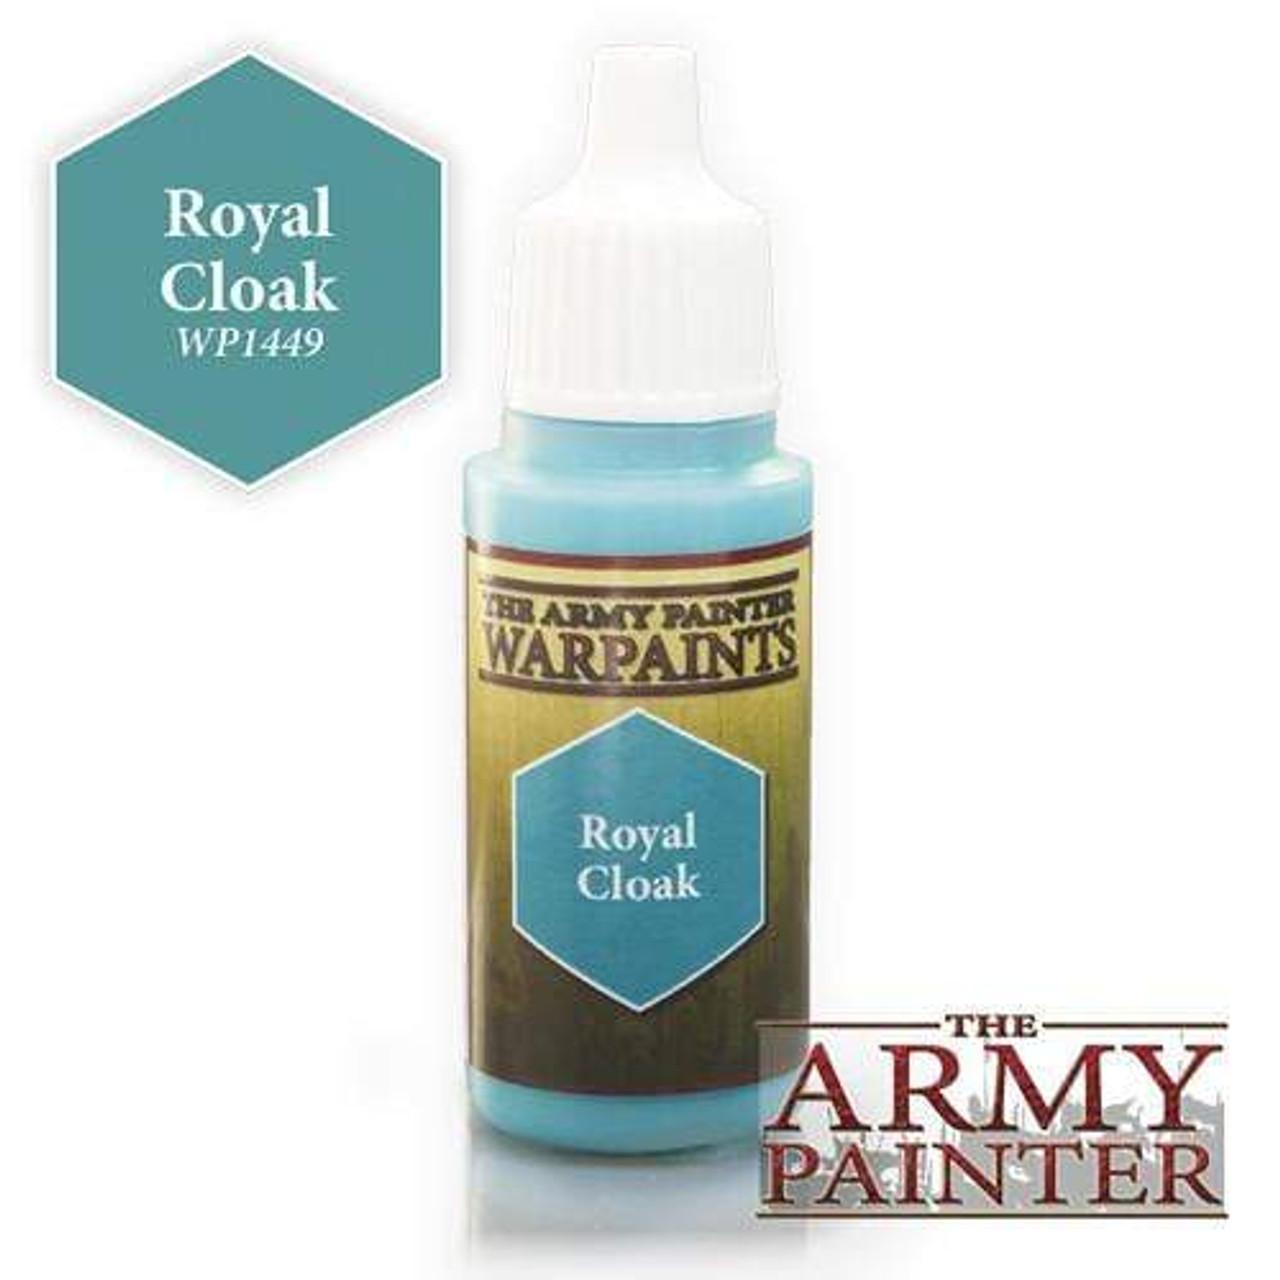 Army Painter Warpaint: Royal Cloak